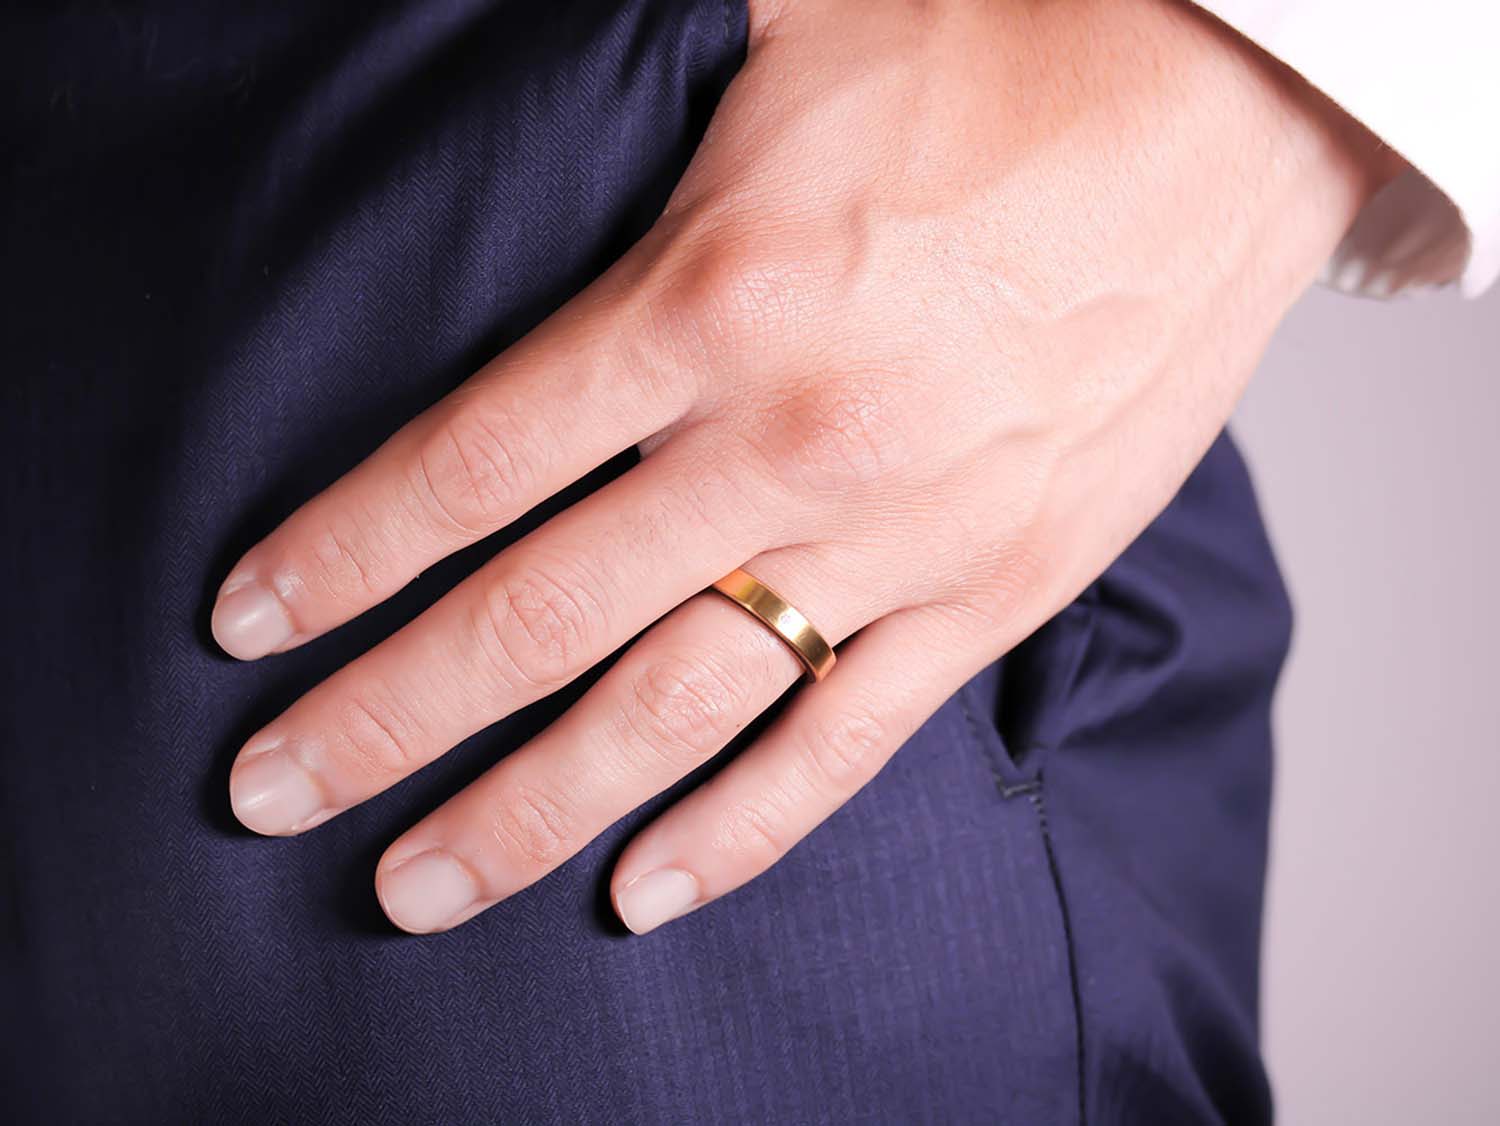 What hand do men's rings go on ?